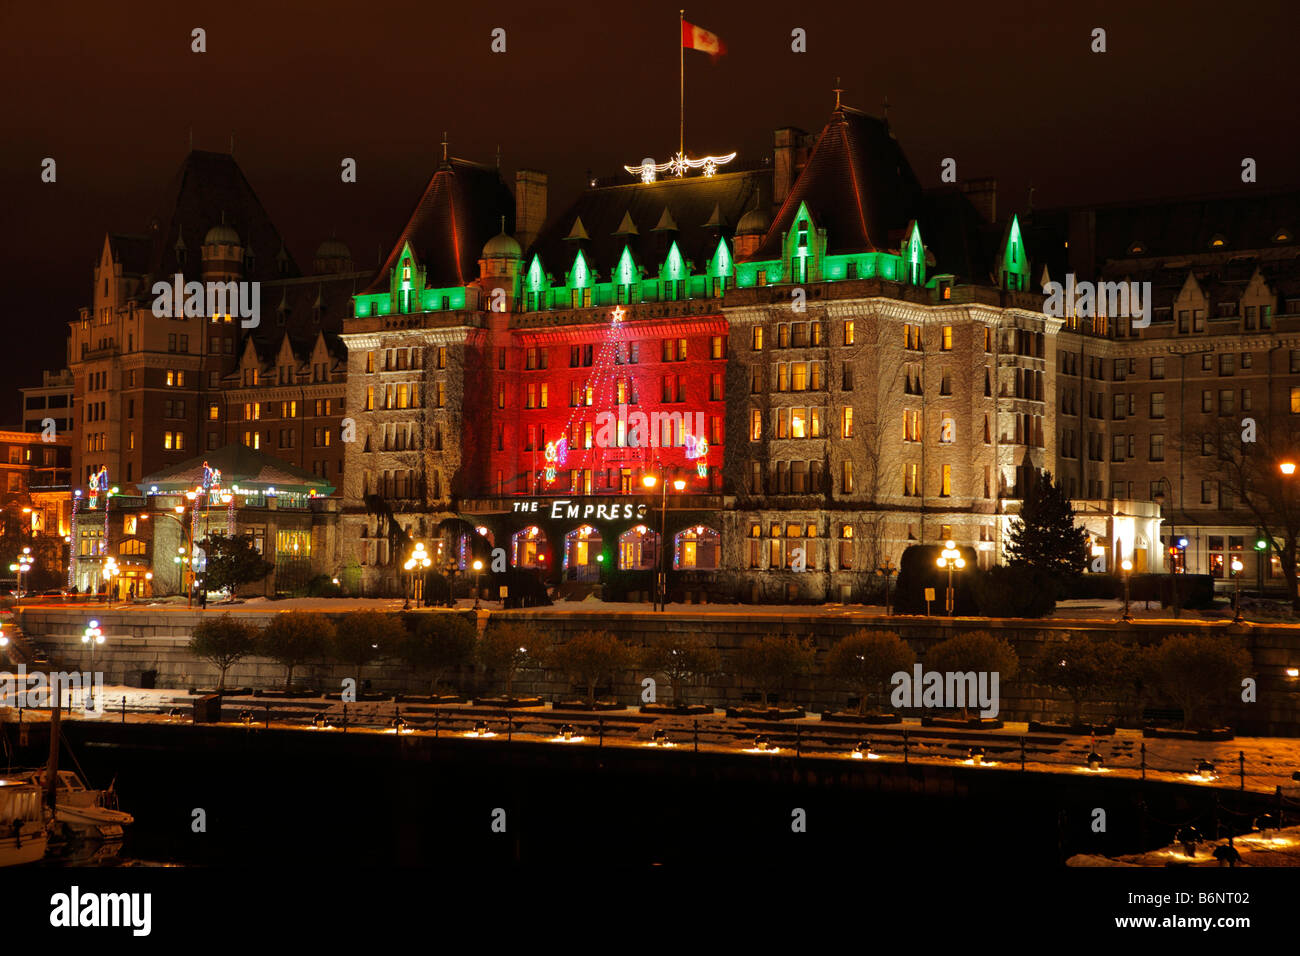 Festliche Beleuchtung zu Weihnachten und das Fairmont Empress Hotel Victoria British Columbia Kanada Stockfoto